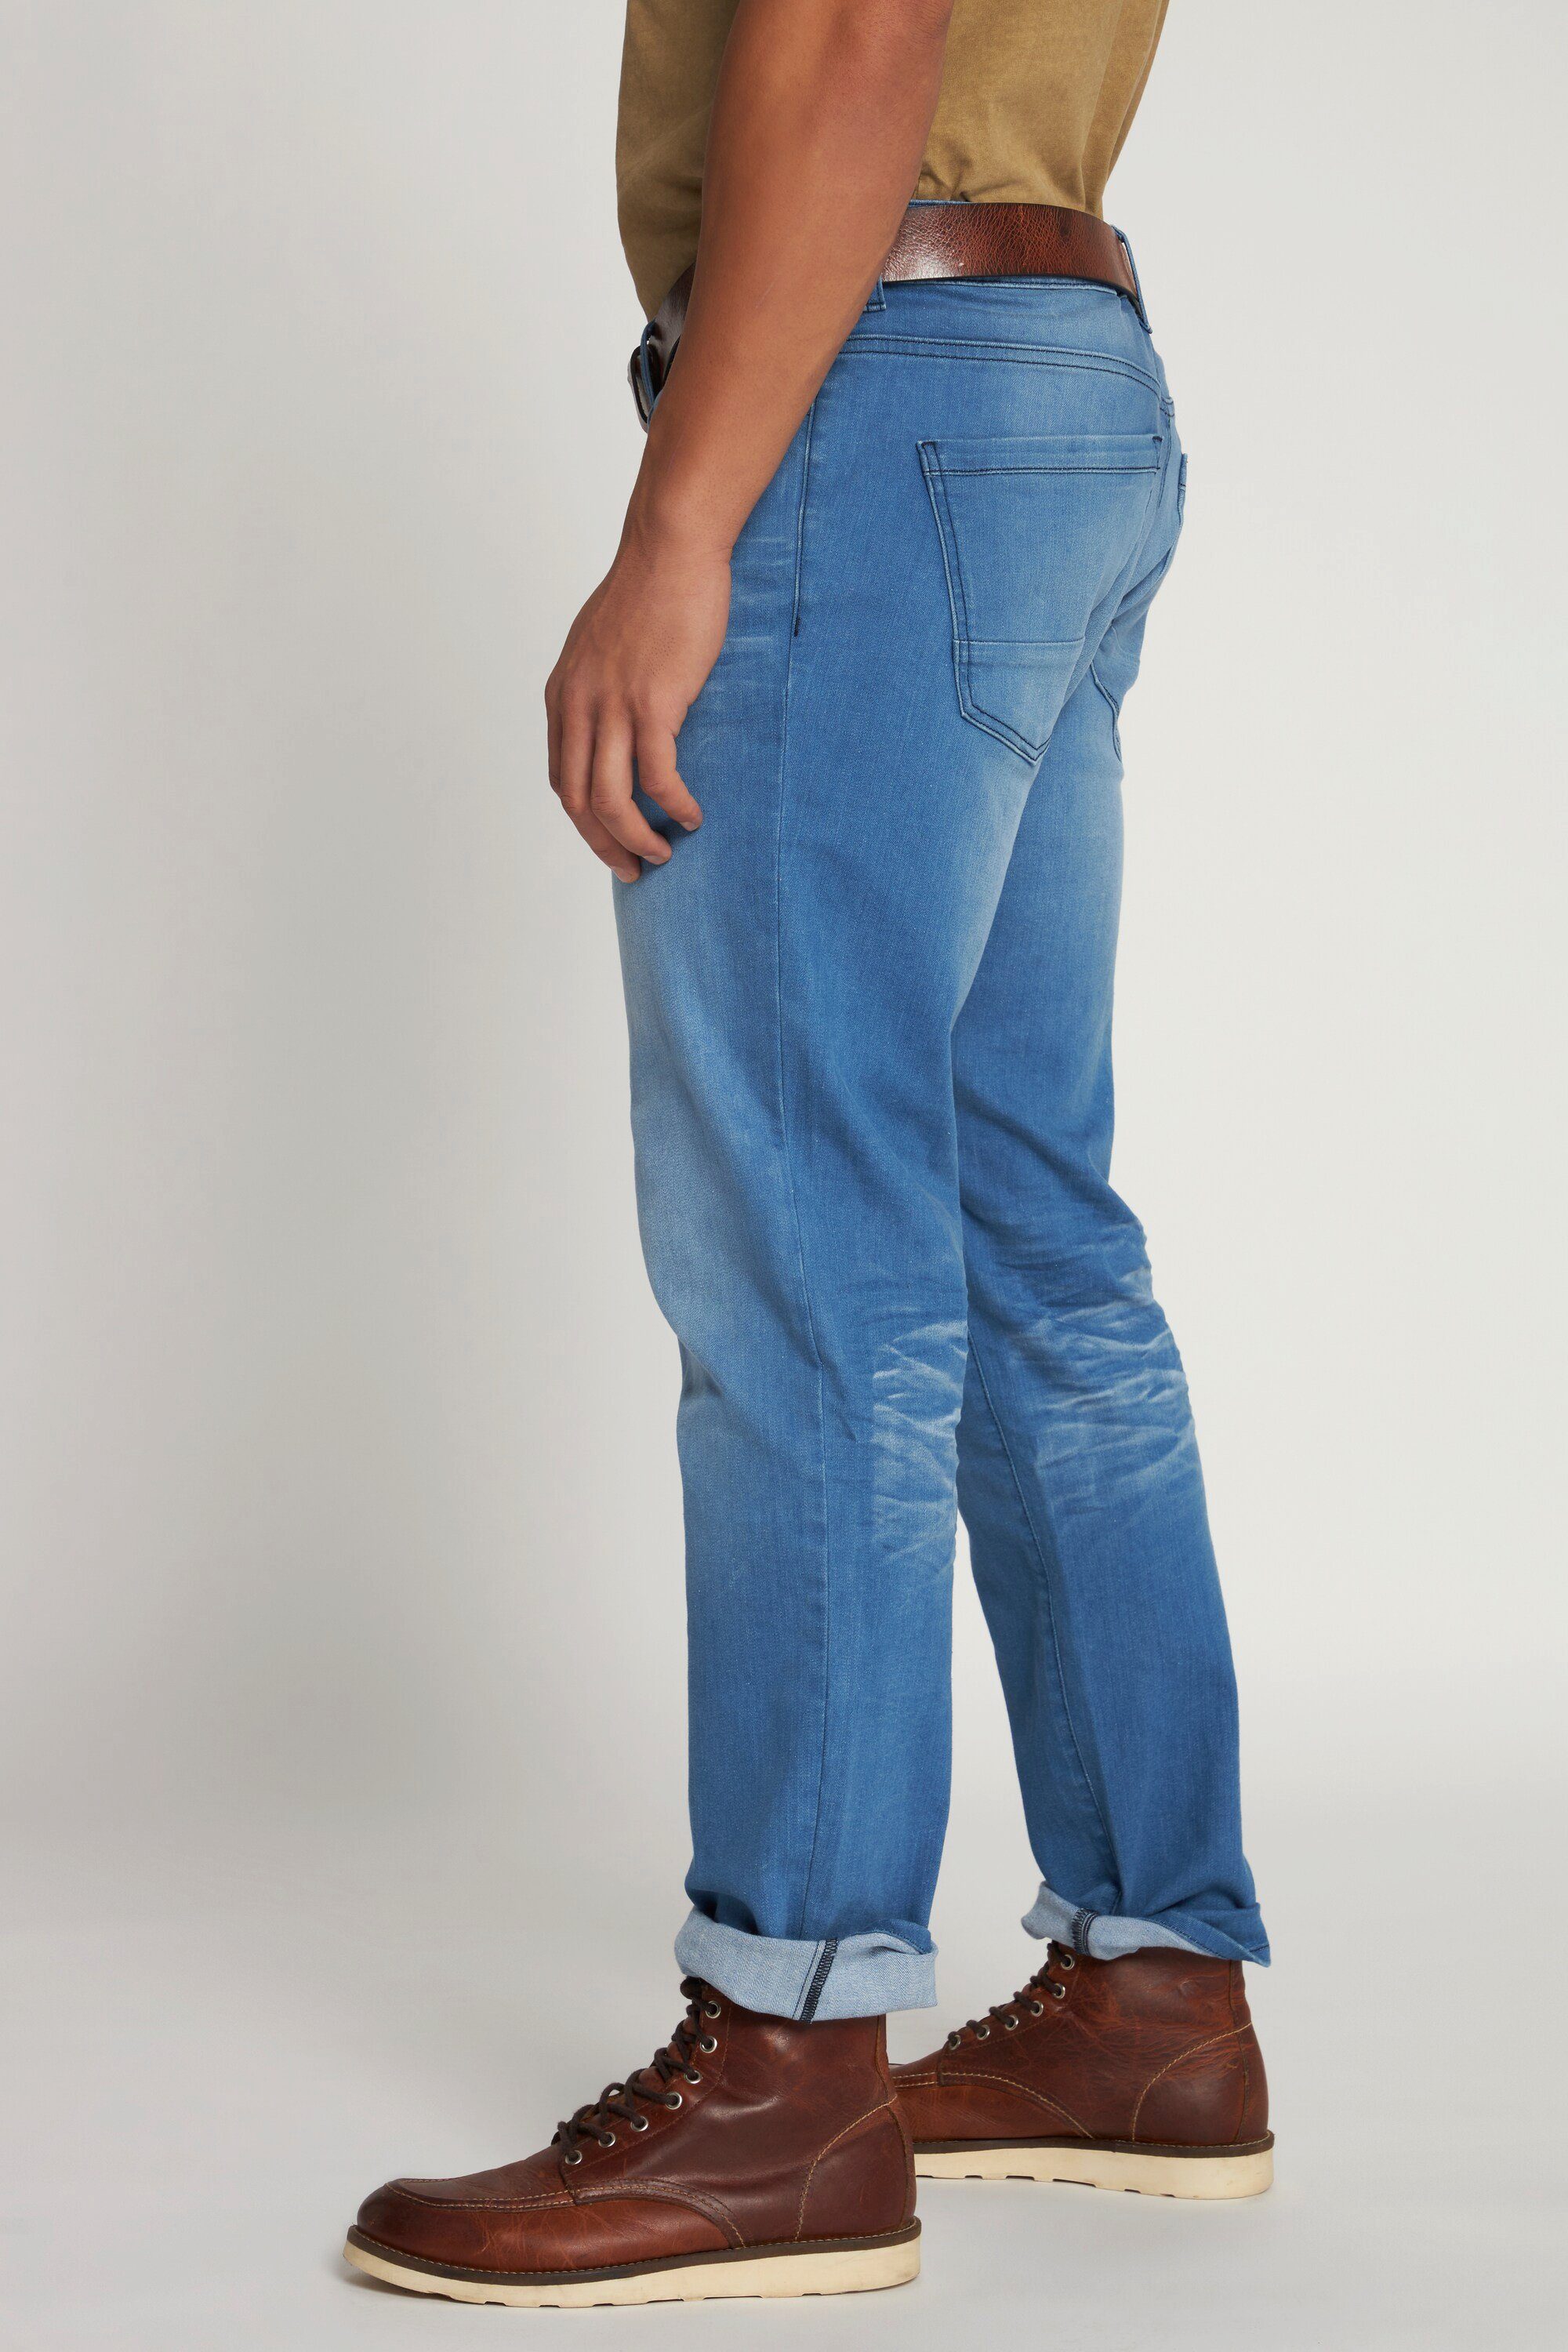 Vintage blue Denim 5-Pocket-Jeans Loose Fit Look light Jeans JP1880 Tapered